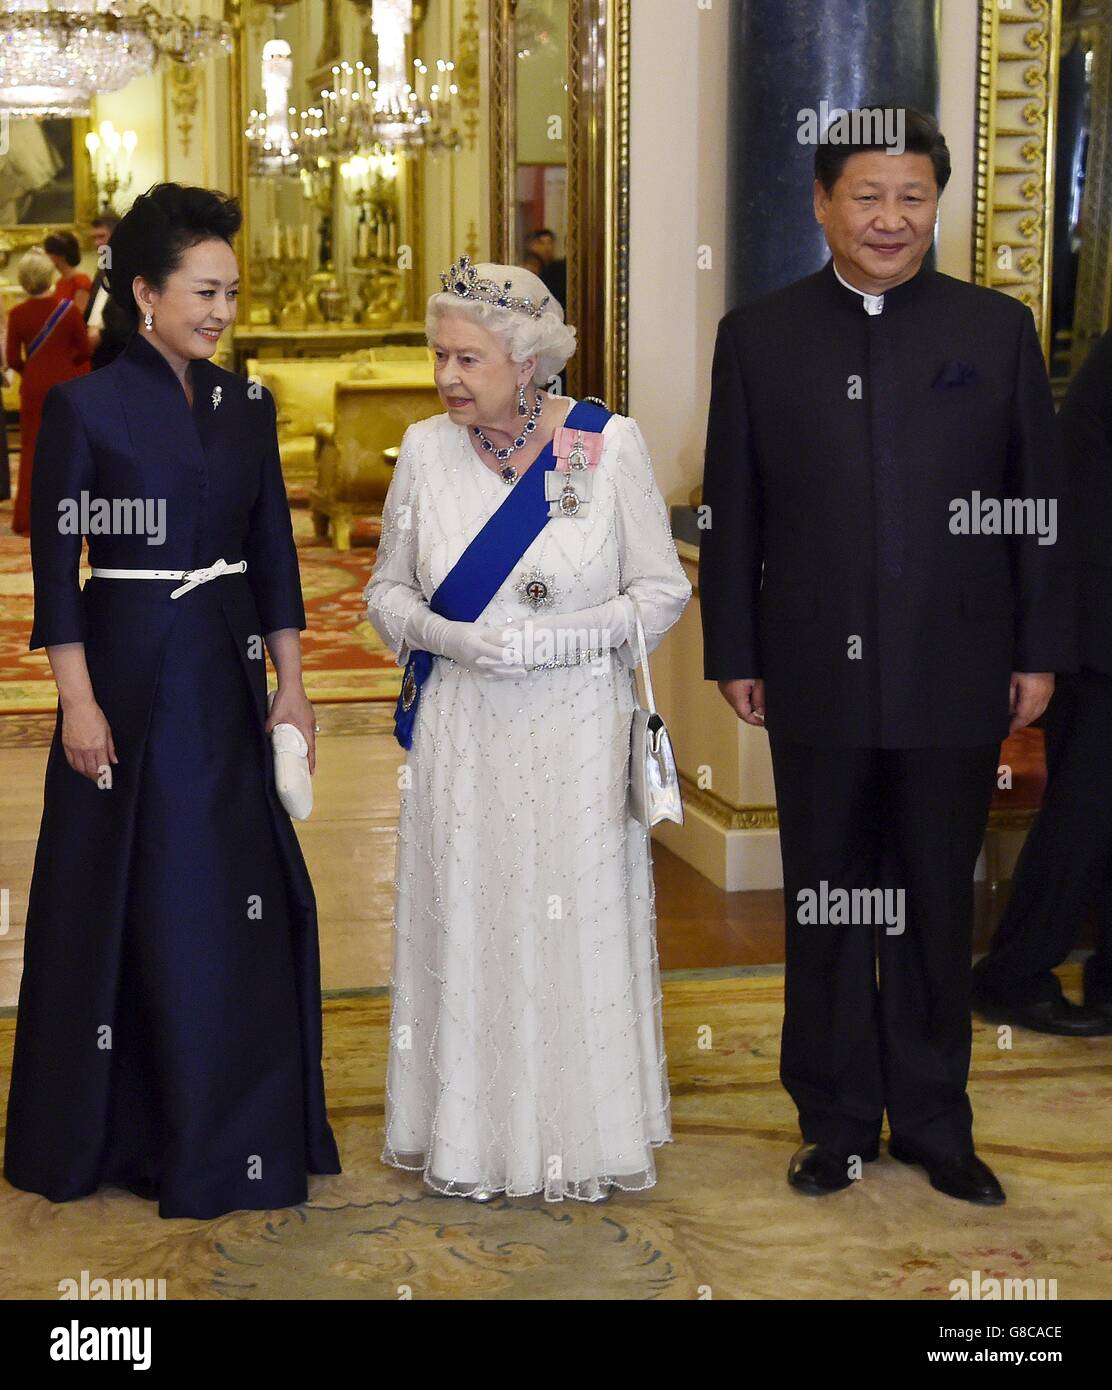 Le président de la Chine Xi Jinping et son épouse Peng Liyuan accompagnent la reine Elizabeth II lorsqu'ils arrivent pour un banquet d'État au Palais de Buckingham à Londres, le premier jour complet de sa visite d'État au Royaume-Uni. Banque D'Images